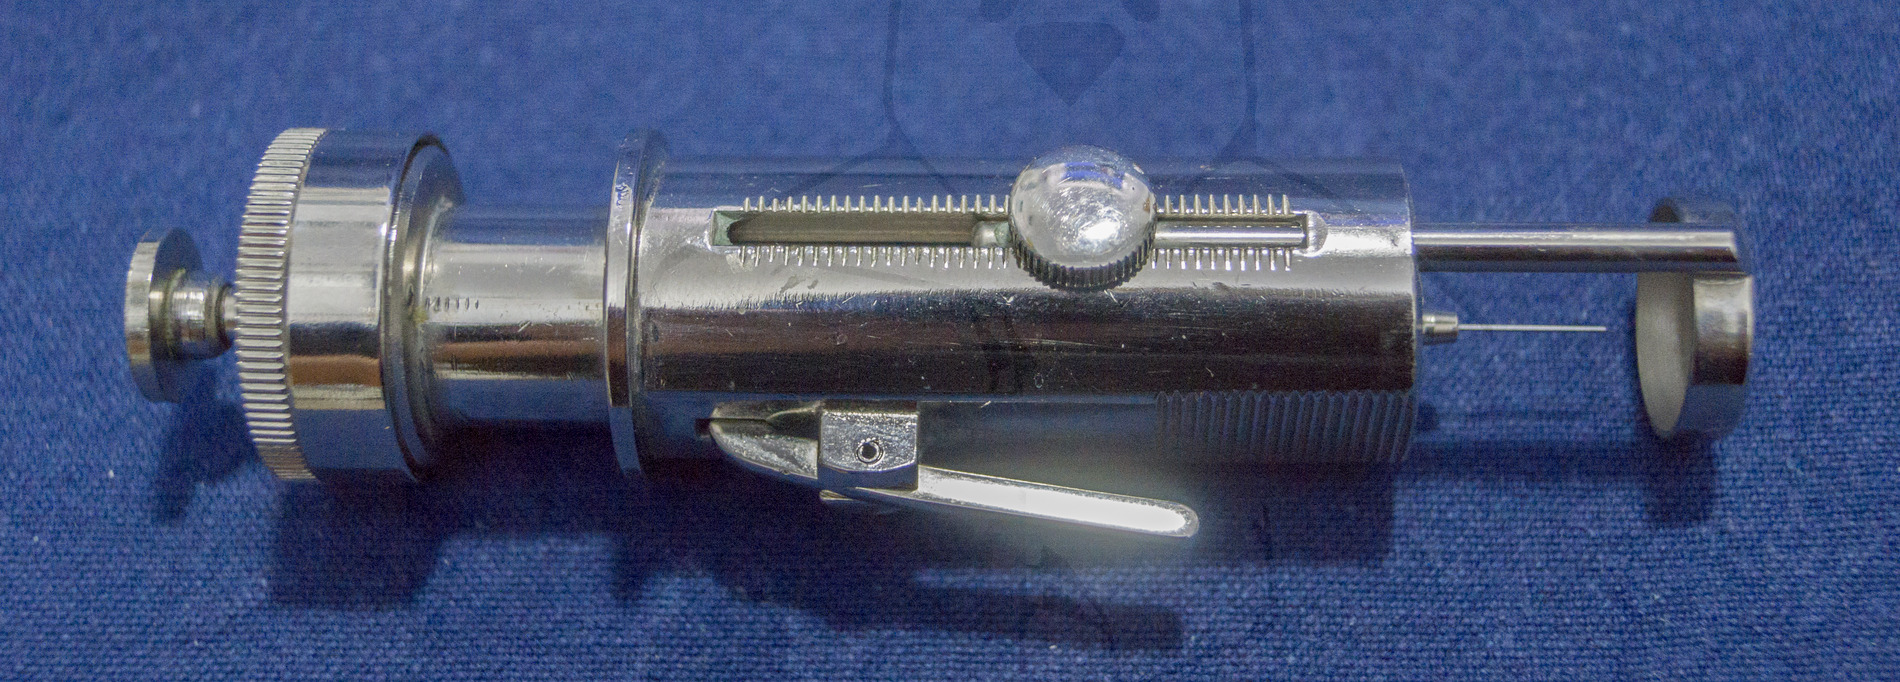 Insulininjektor "Diarapid", 1963'er Jahre, Einstellschraube für die Einstichtiefe